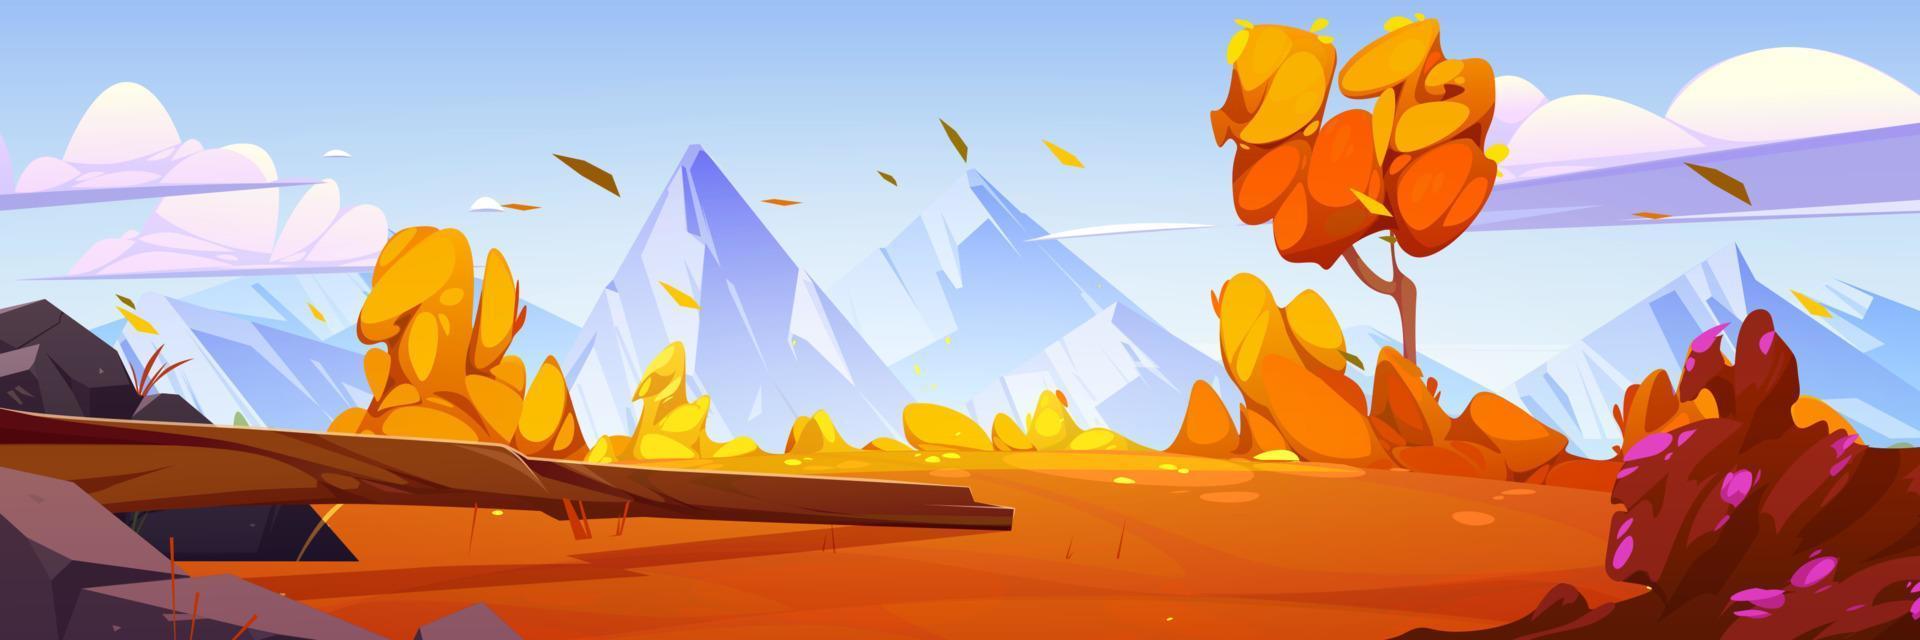 Mountain valley cartoon autumn landscape, nature vector